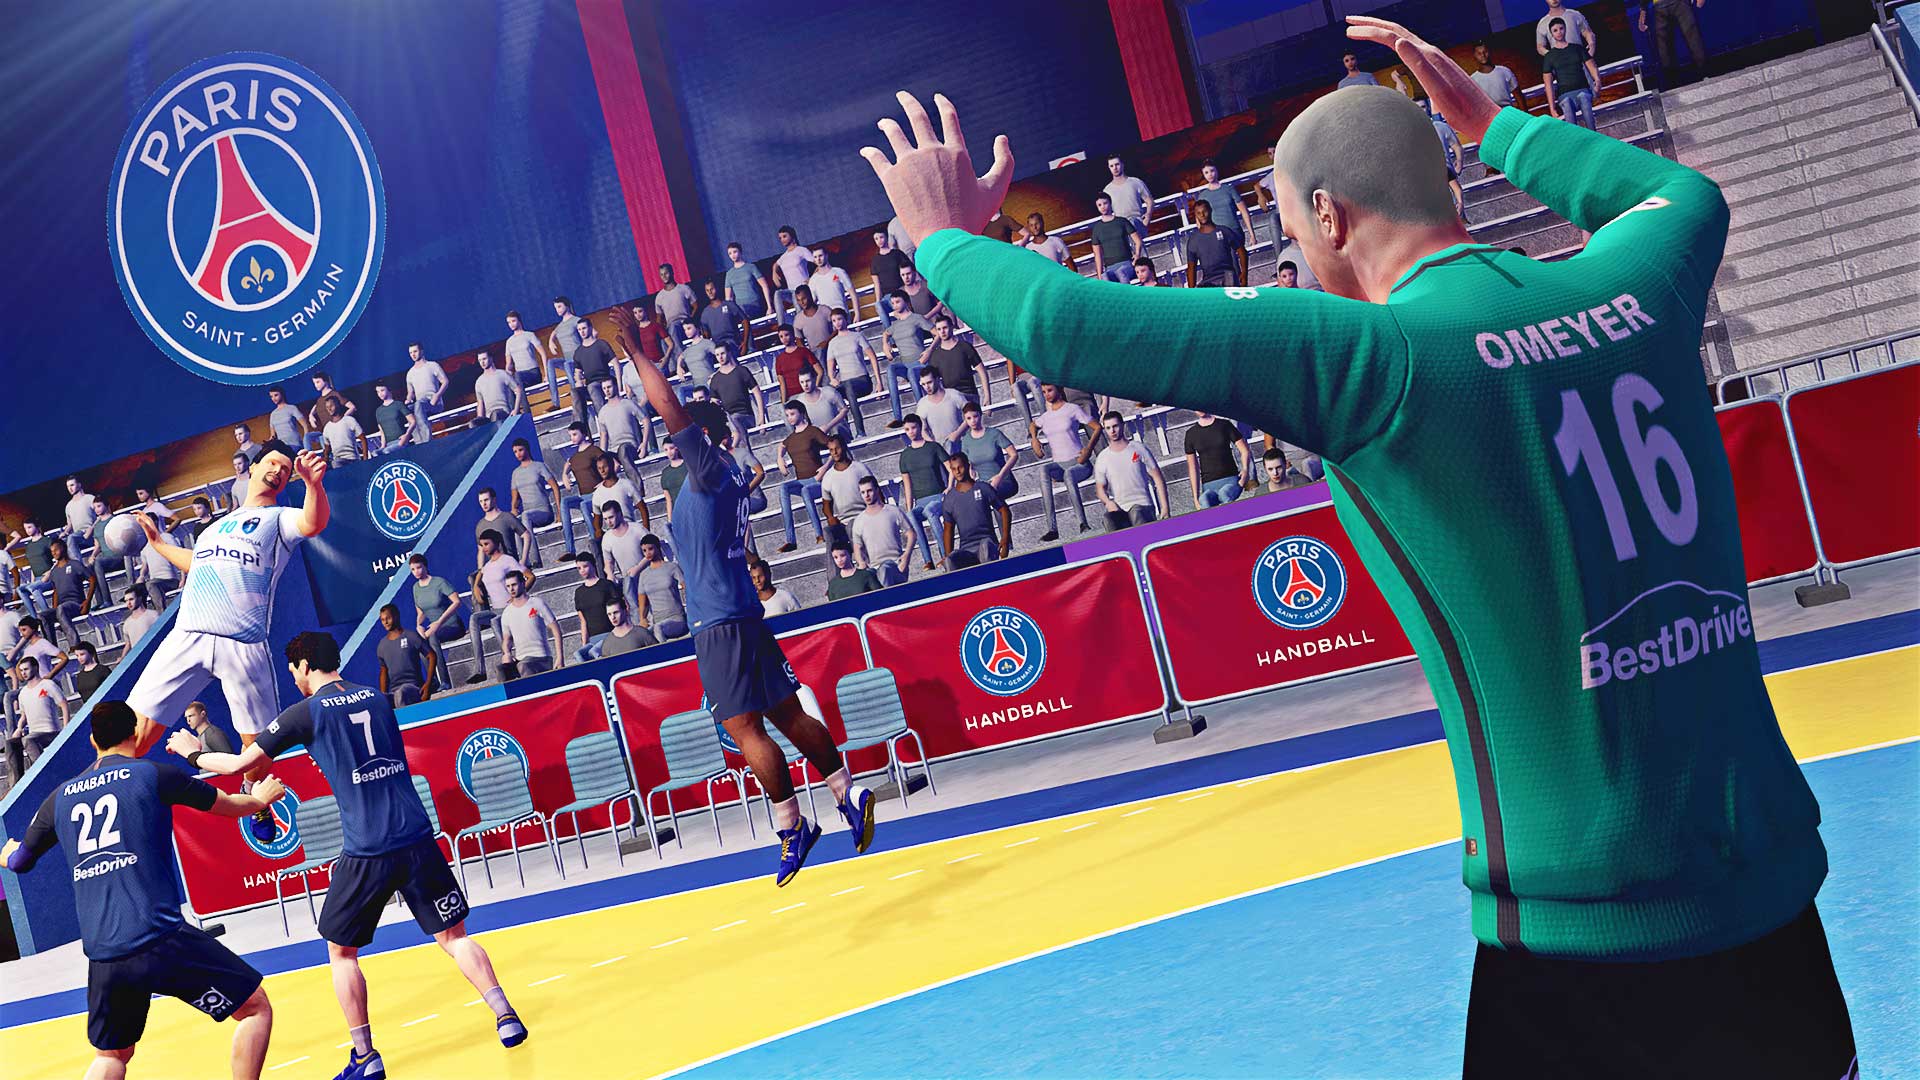 Handball 17 Steam'de